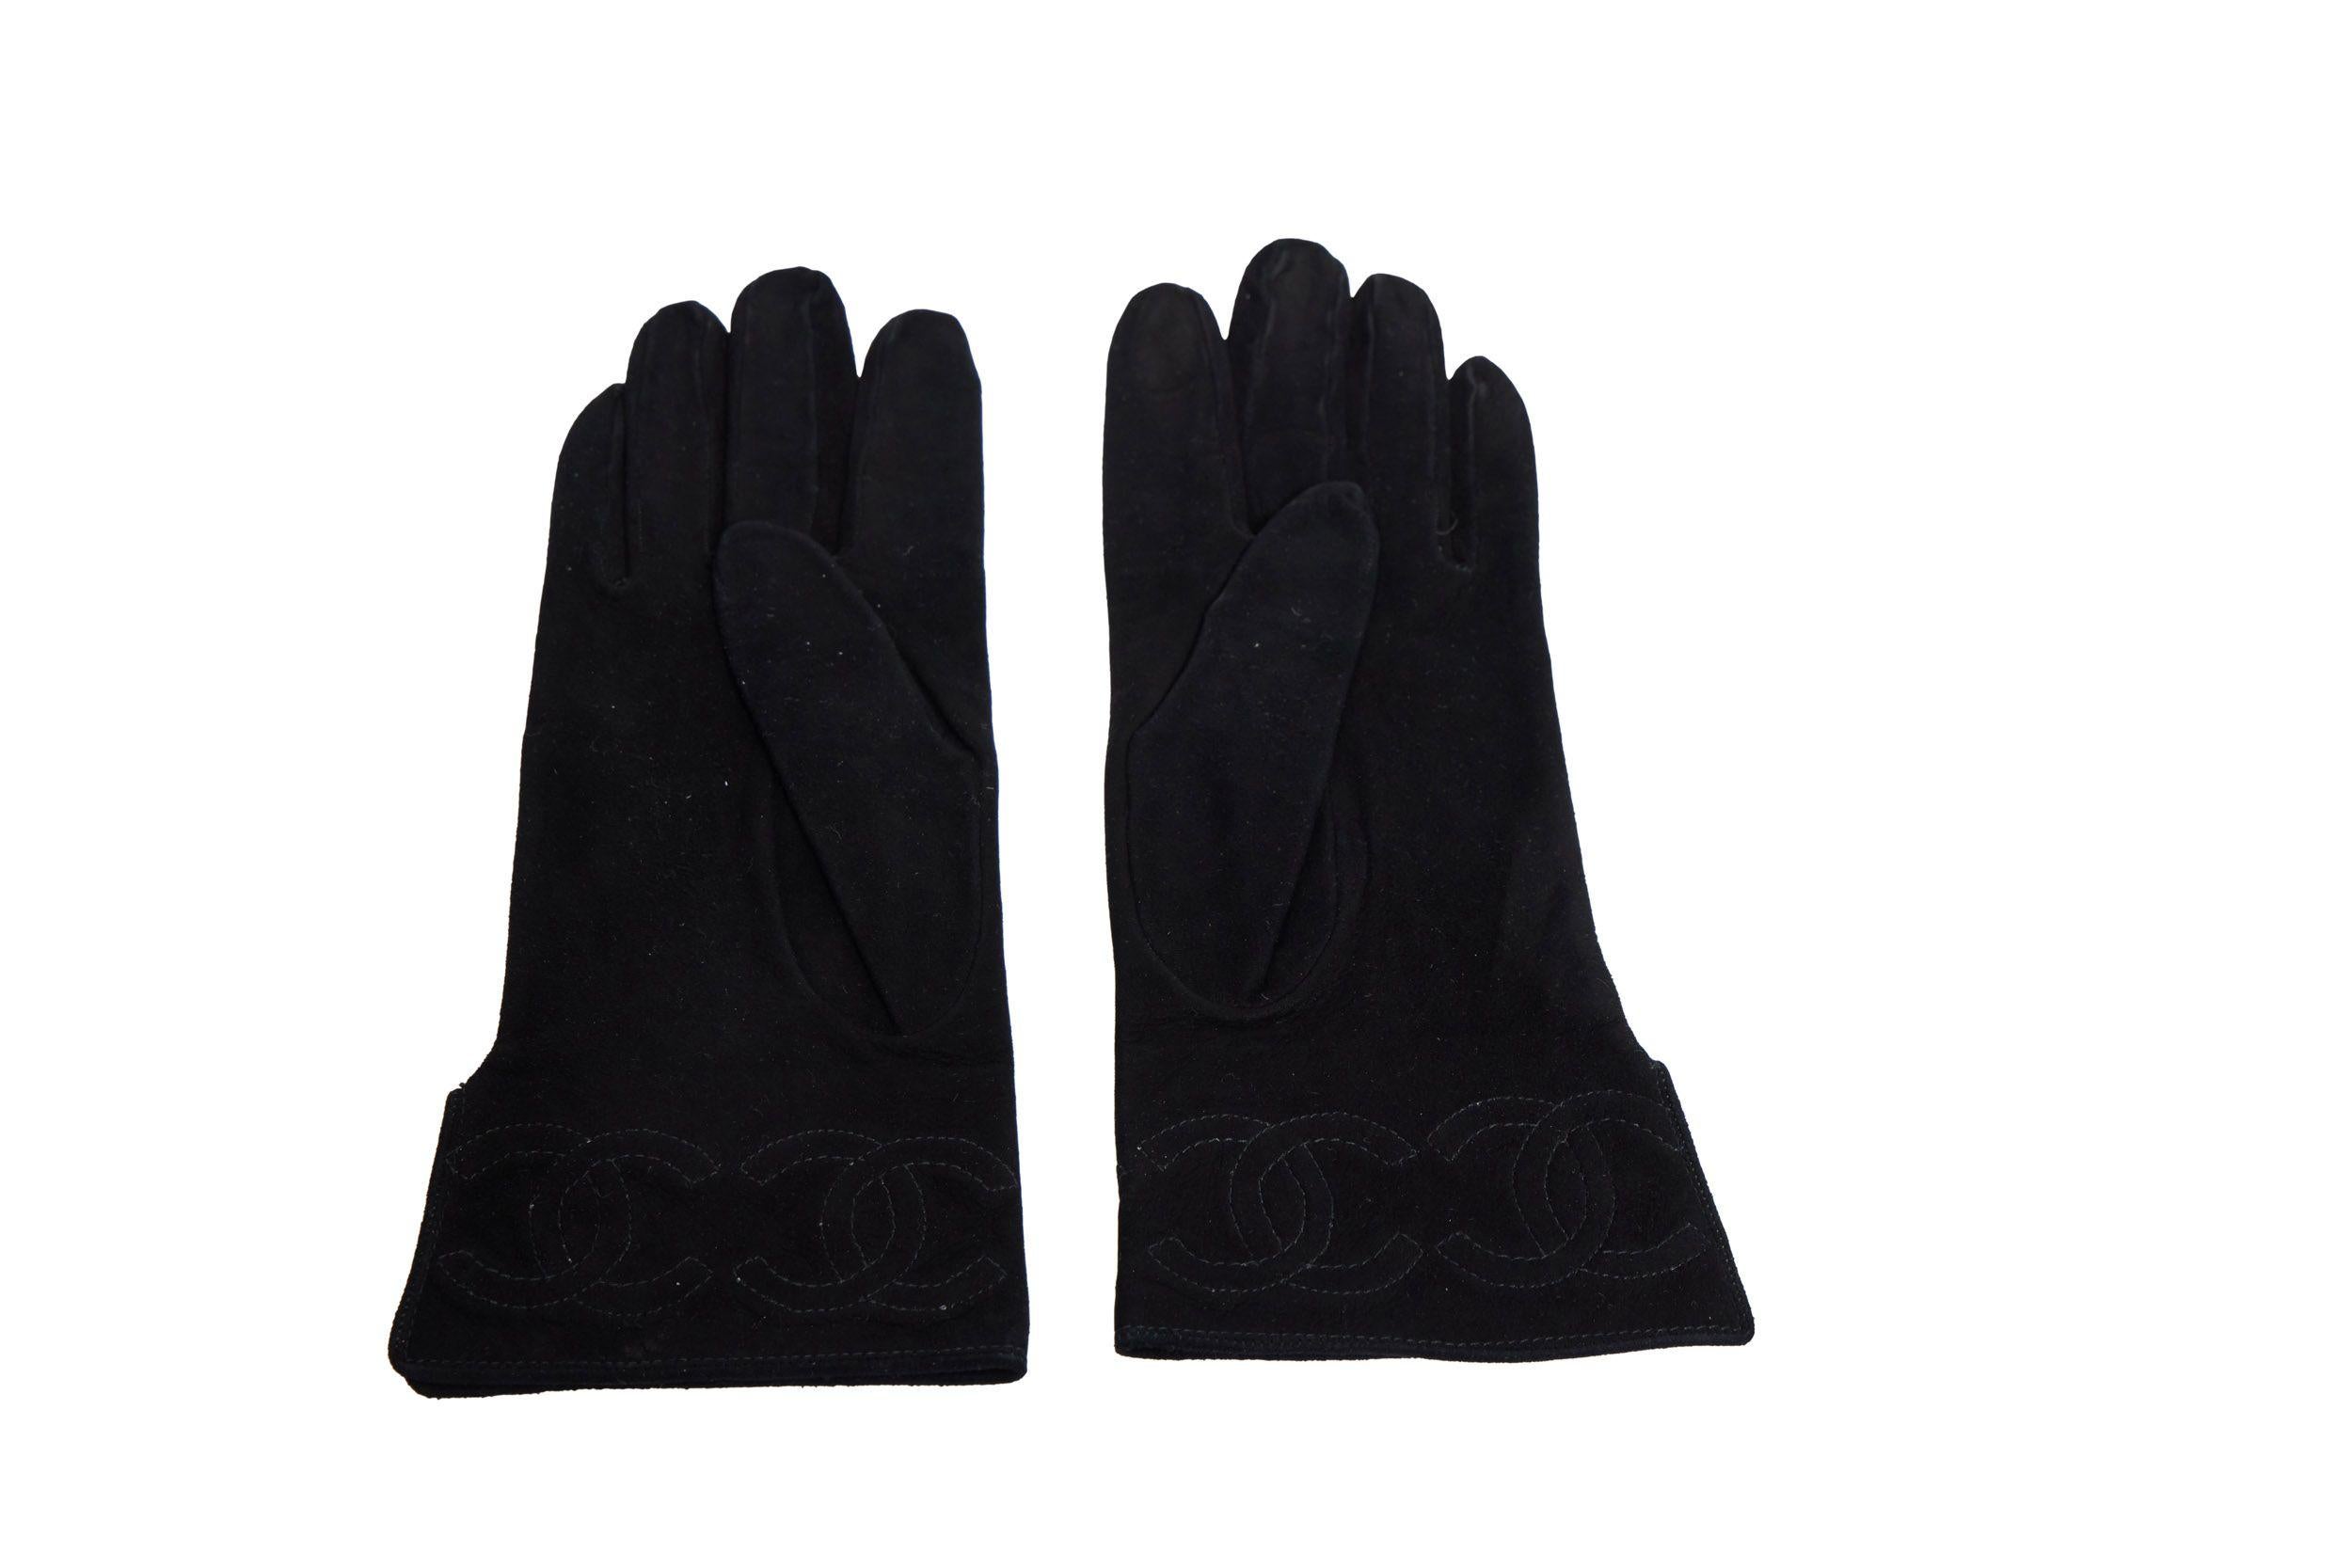 Super elegante Chanel Handschuhe aus schwarzem Wildleder mit aufgesticktem CC-Logo am Rand. Sie haben die Größe 7 und sind brandneu. Das Futter ist aus Seide und weiß.
